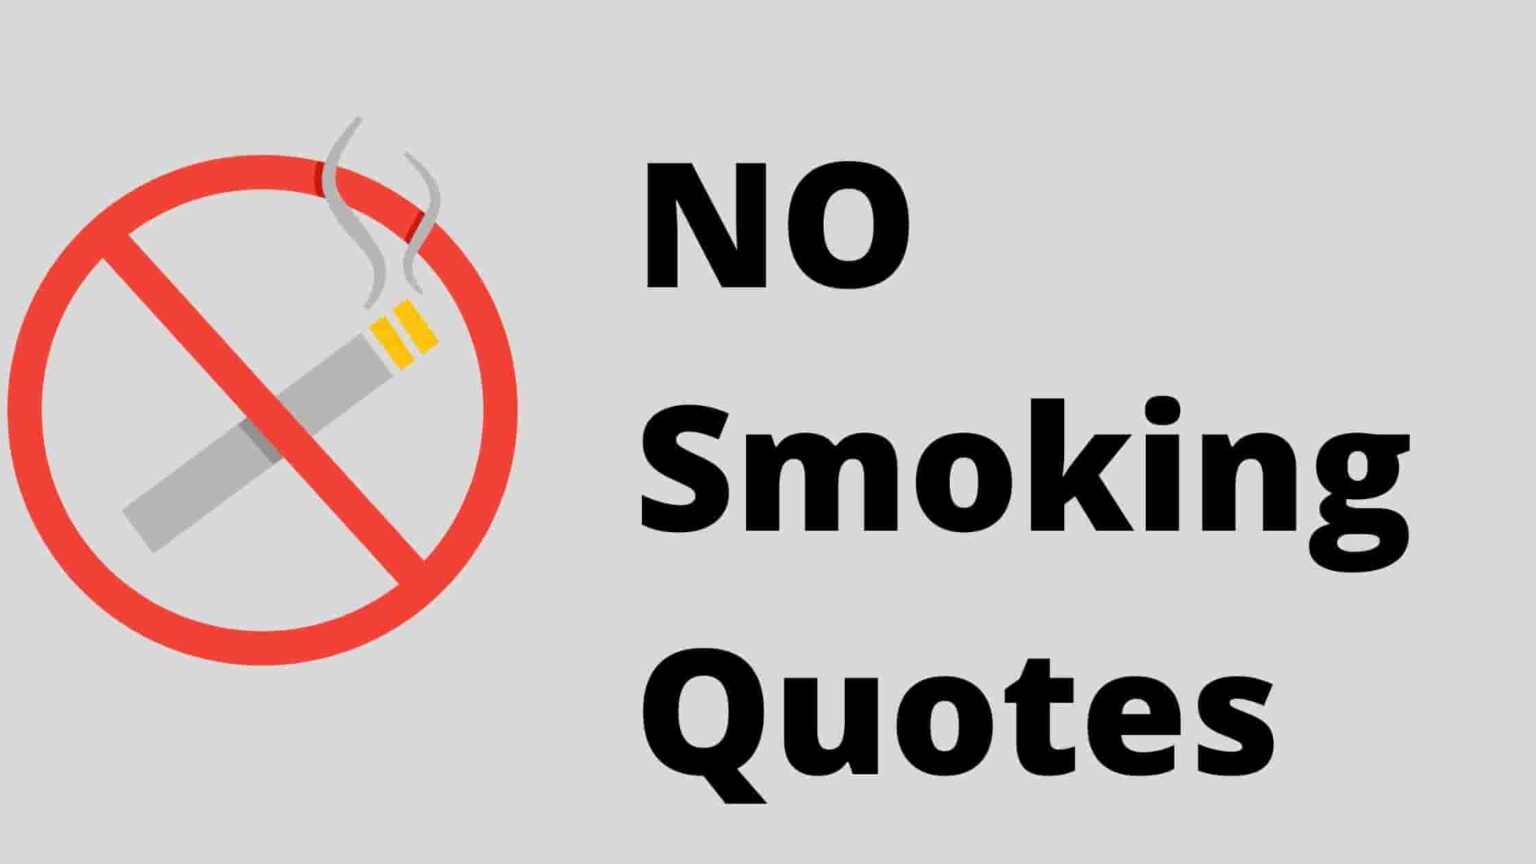 Stopped to smoke stopped smoking. Smoking quotes. Стоп курение. No smoking.